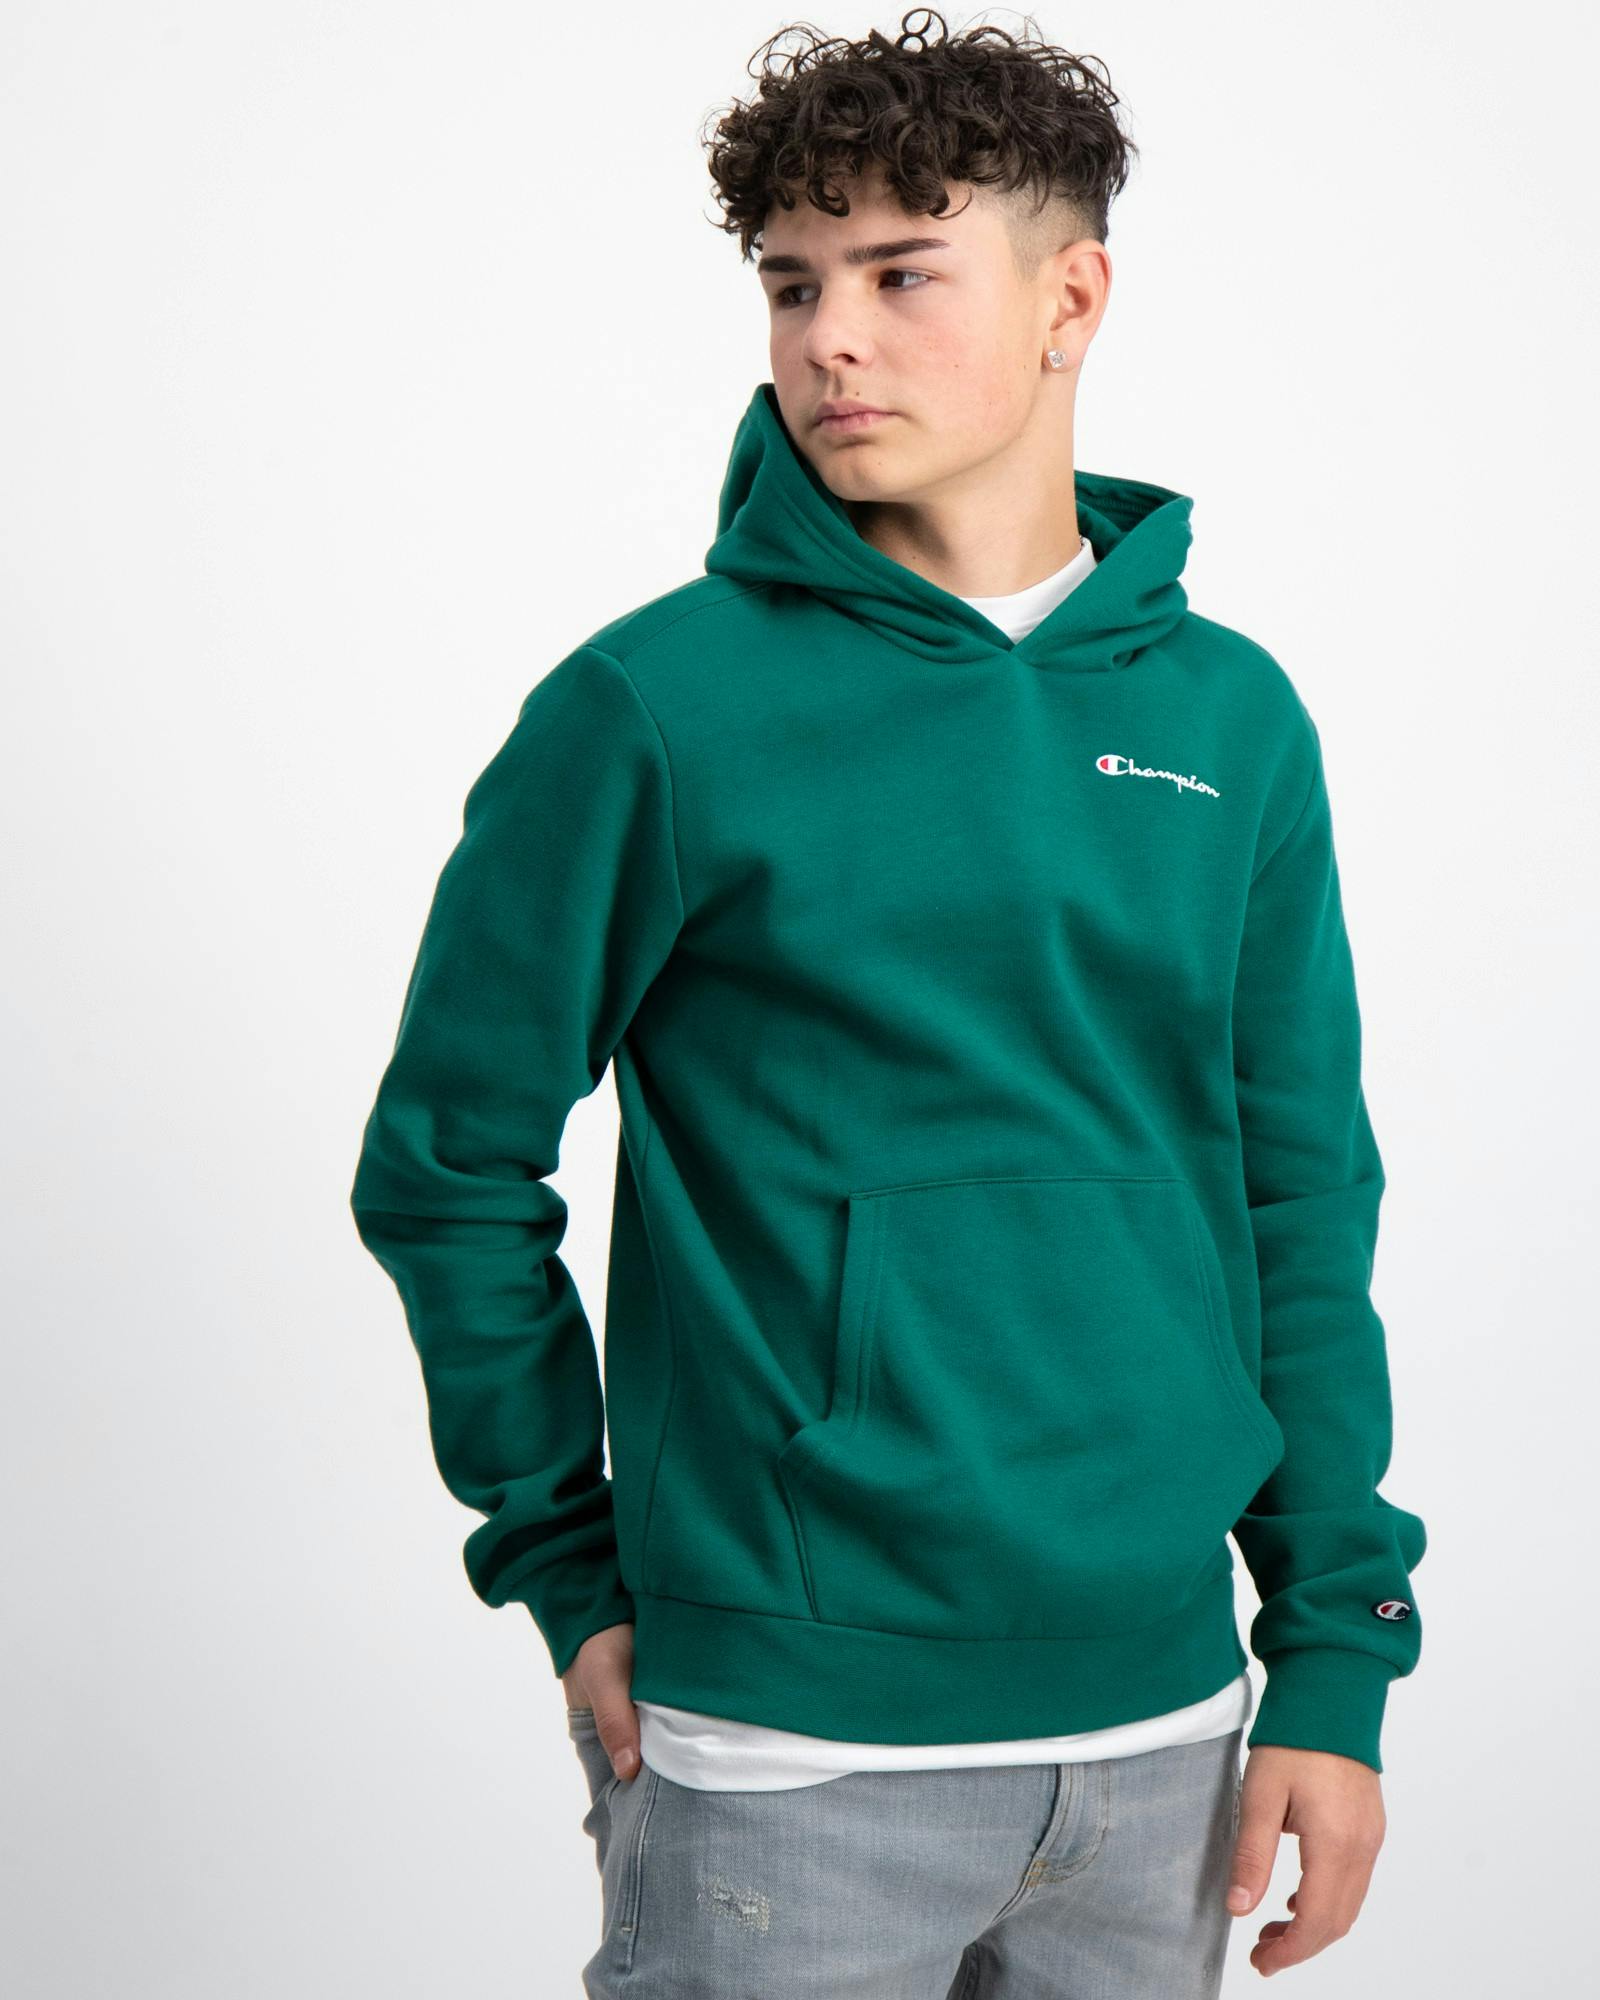 Store Brand | Kids Grün Hooded Jungen für Sweatshirt